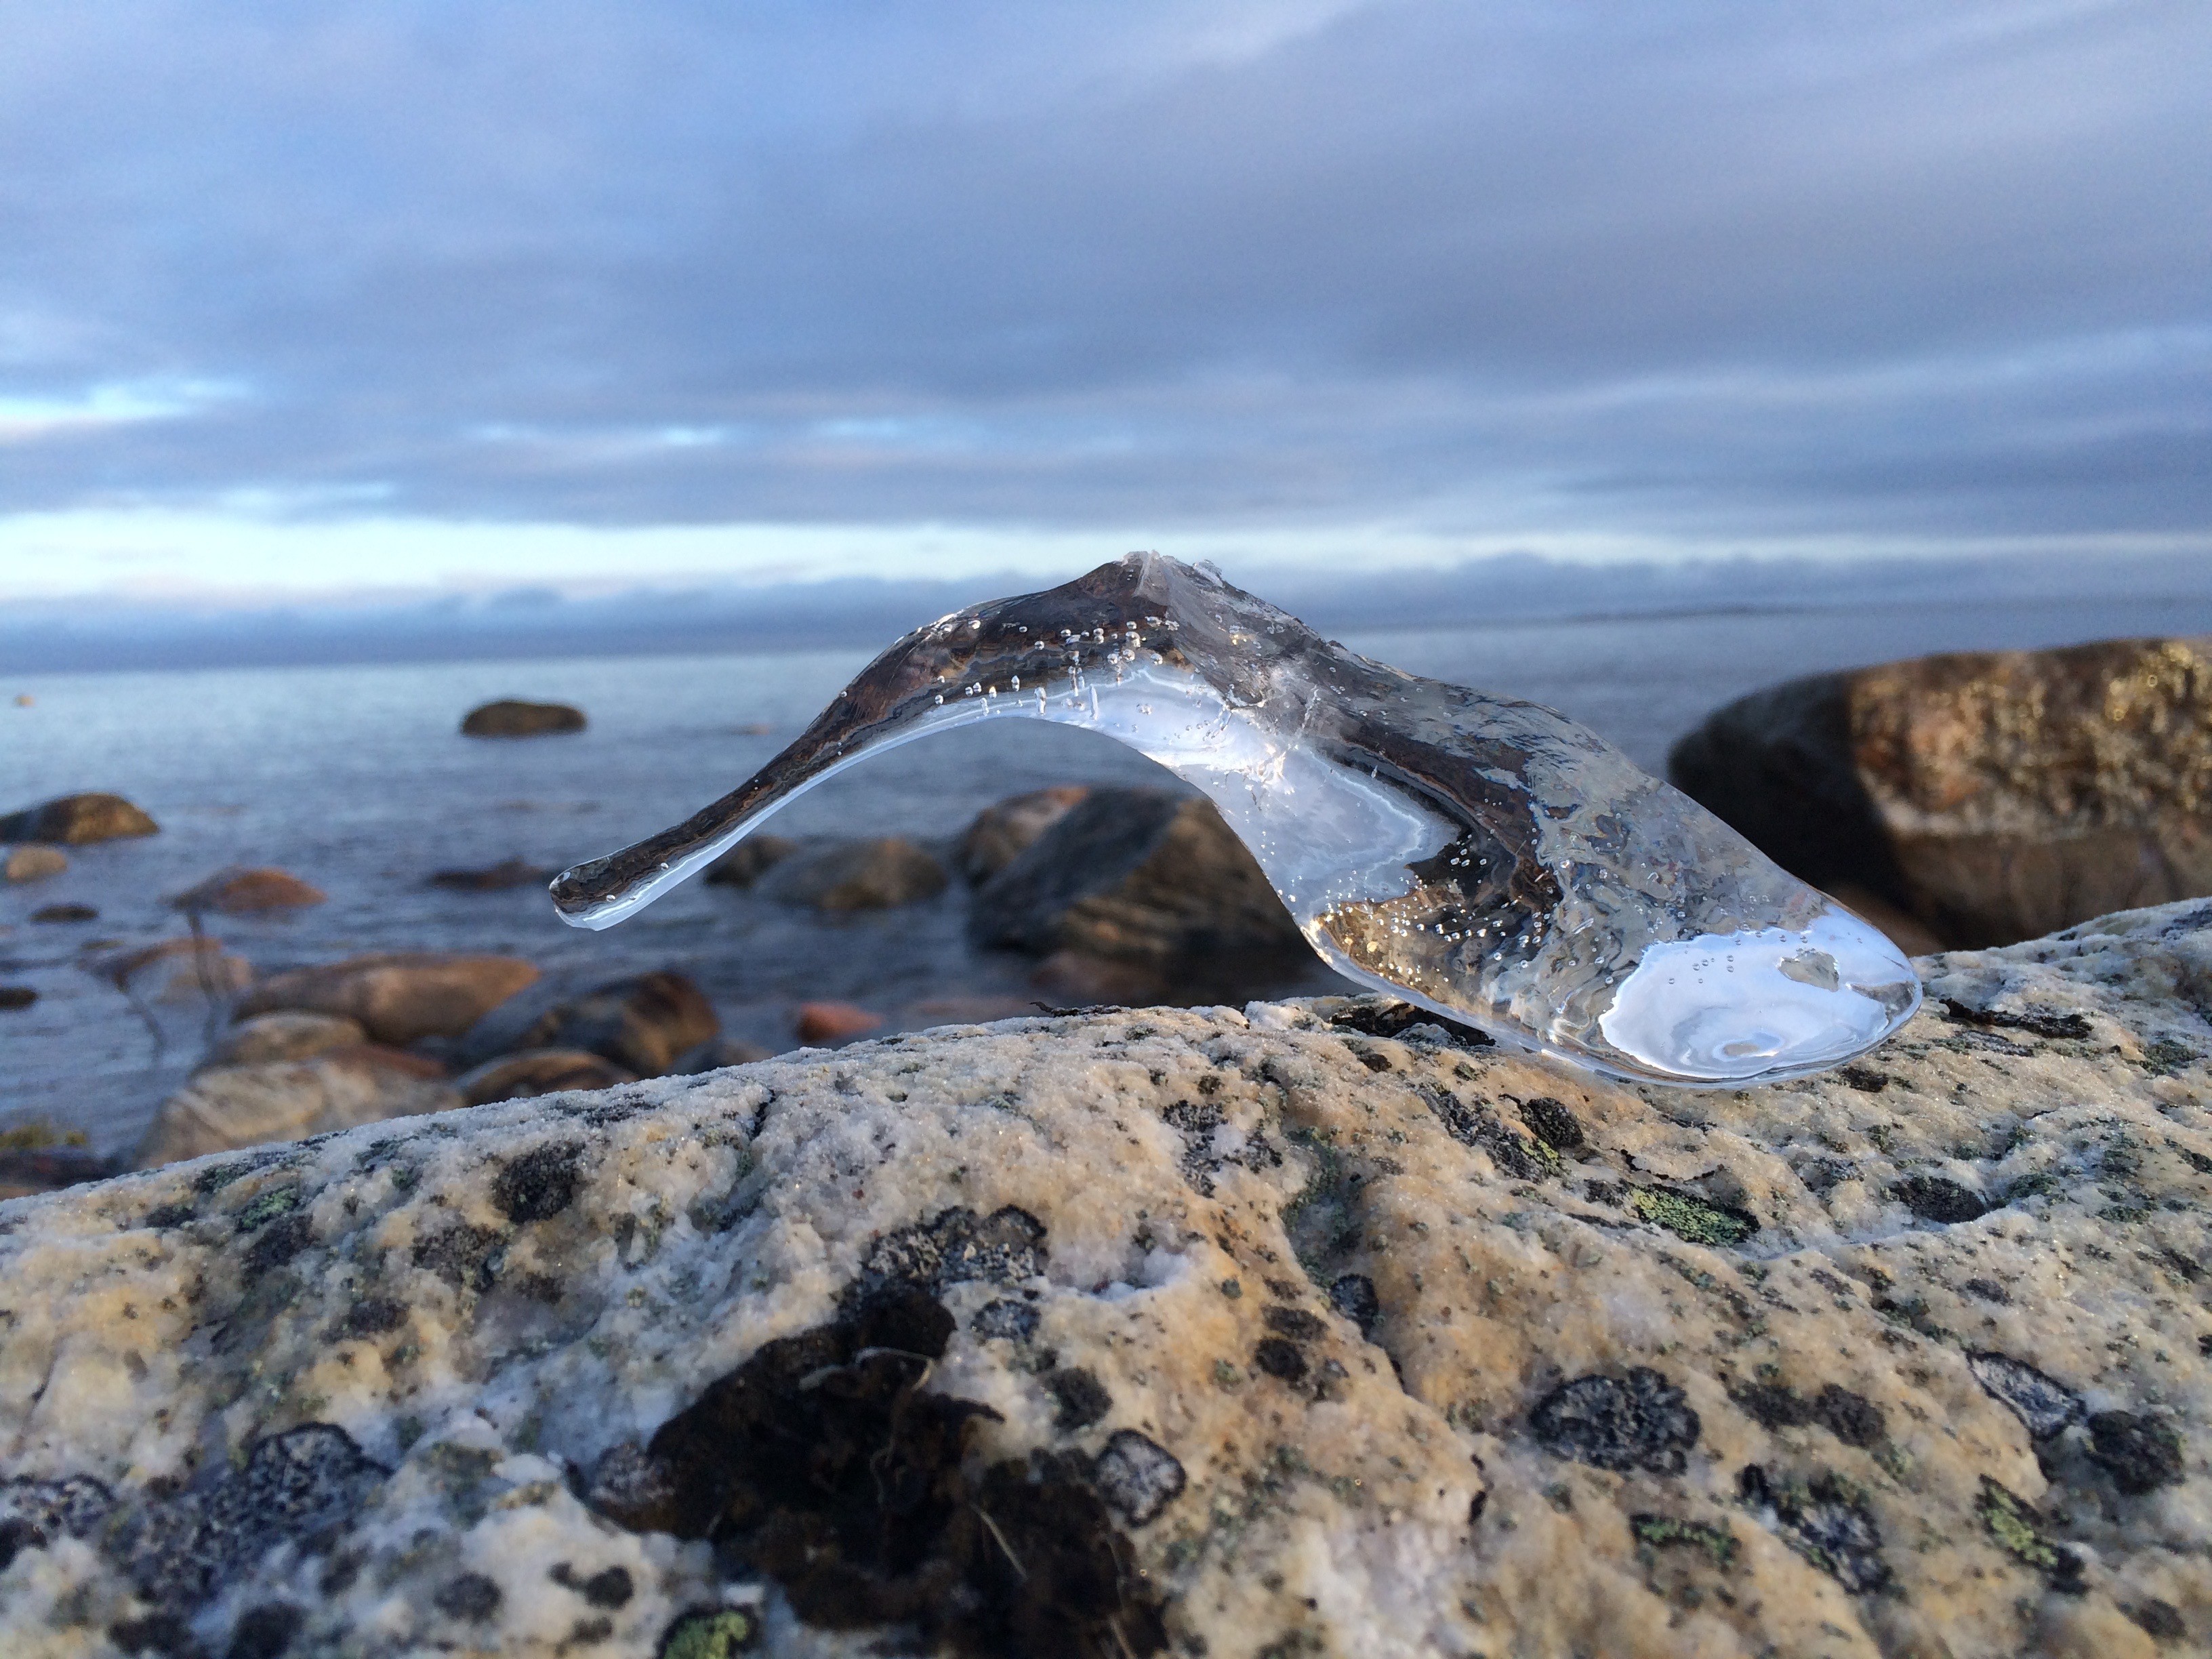 Myrspoven ice sculpture